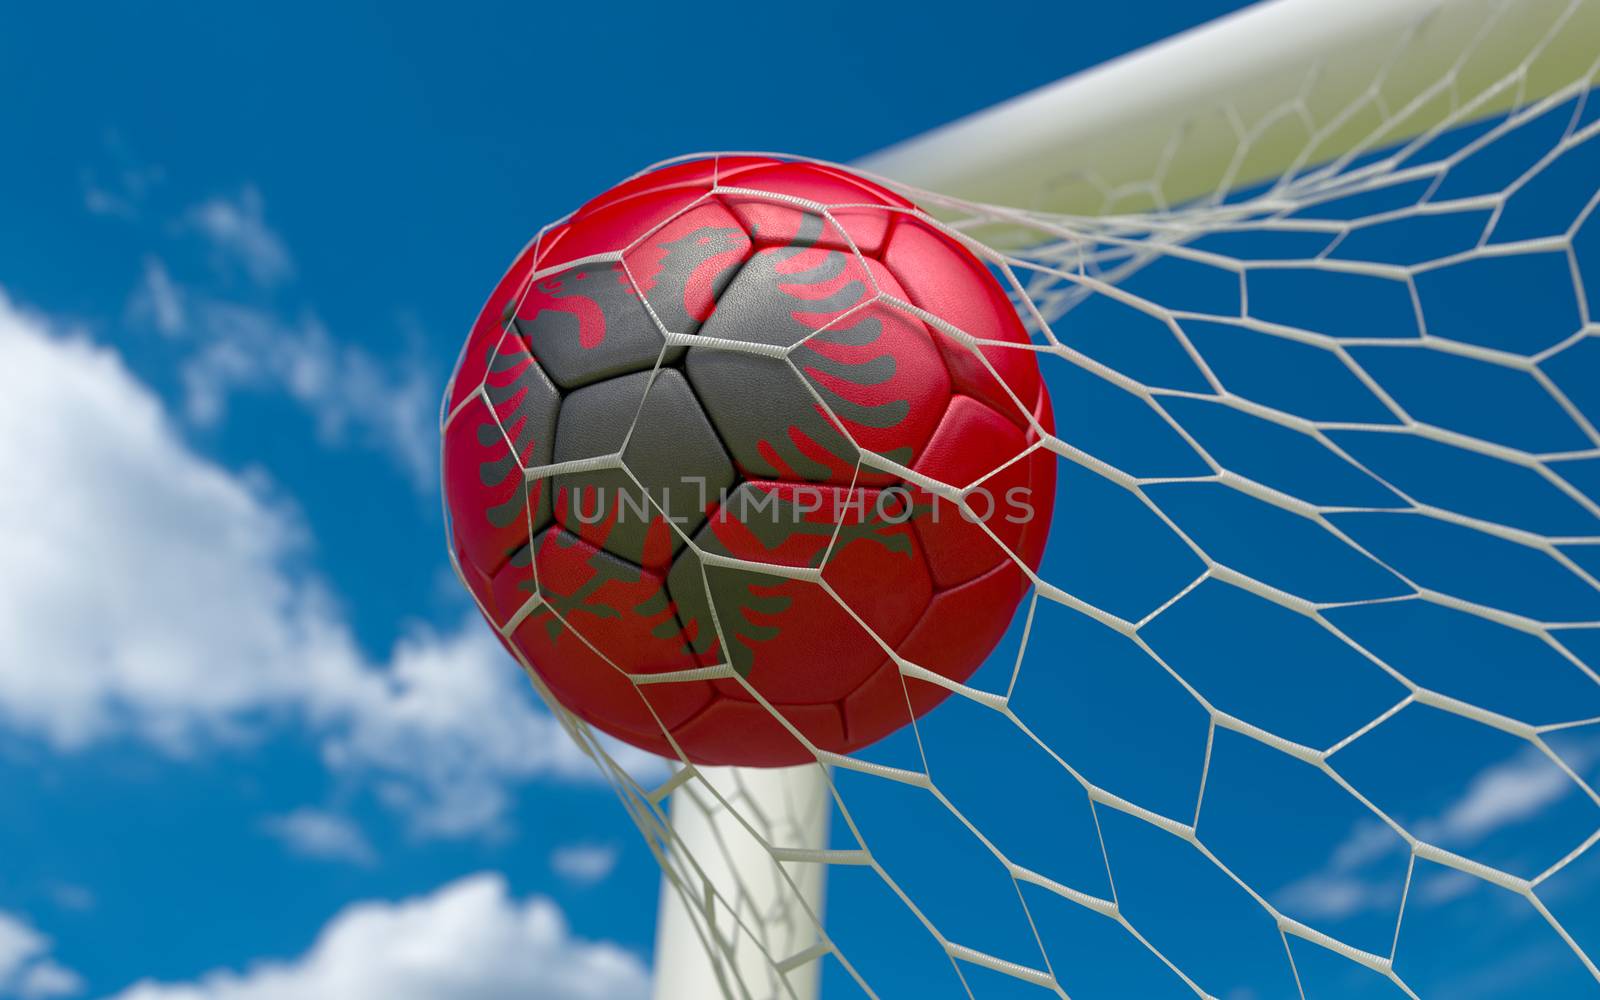 Albania flag and soccer ball, football in goal net